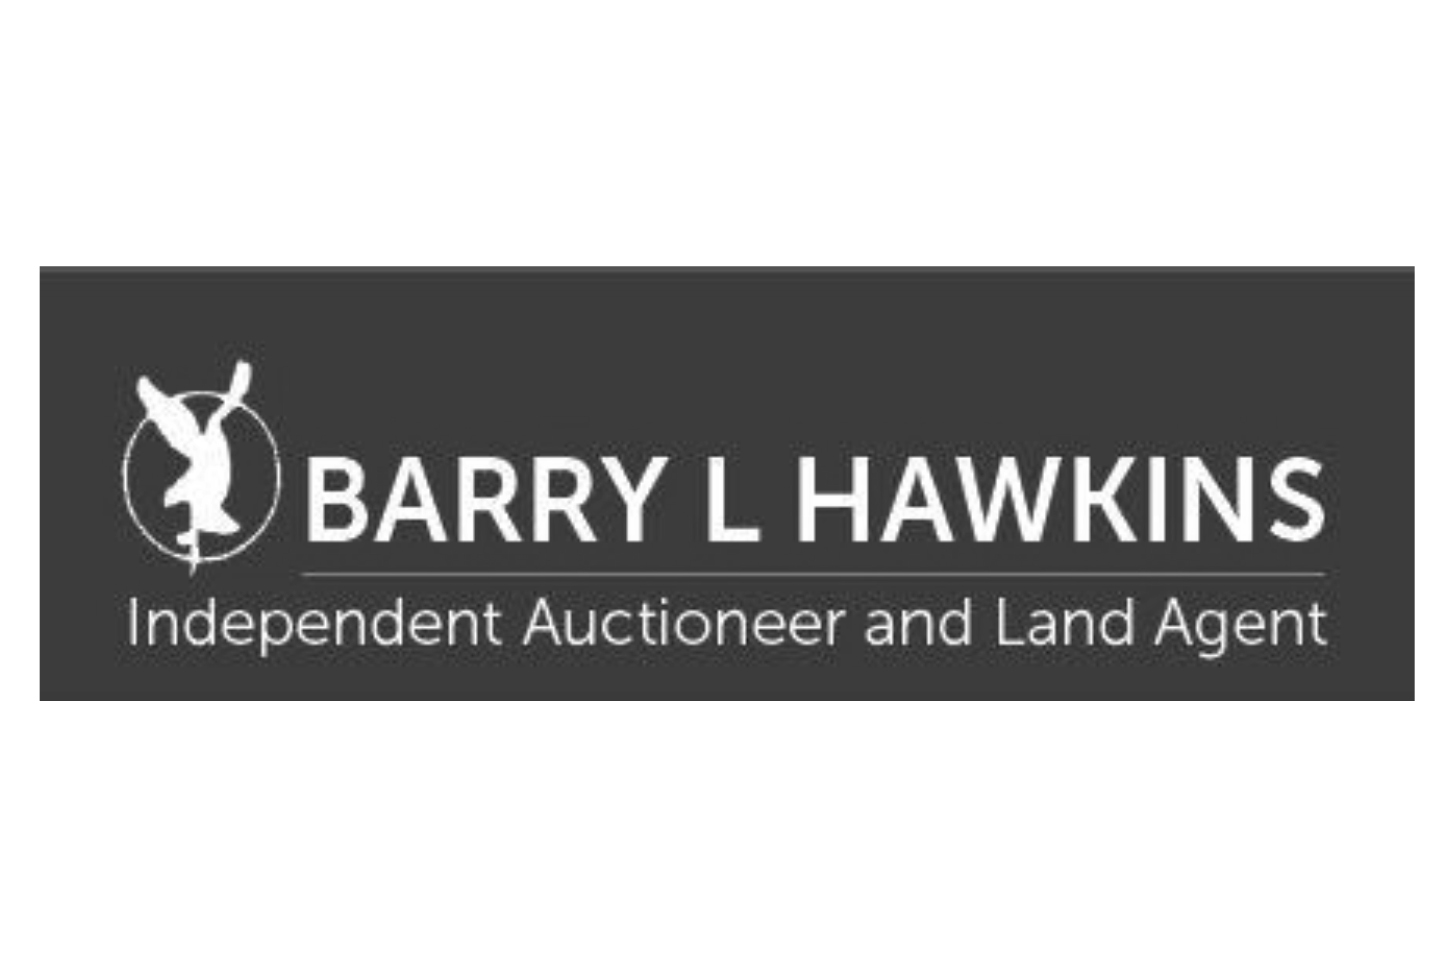 Barry L Hawkins